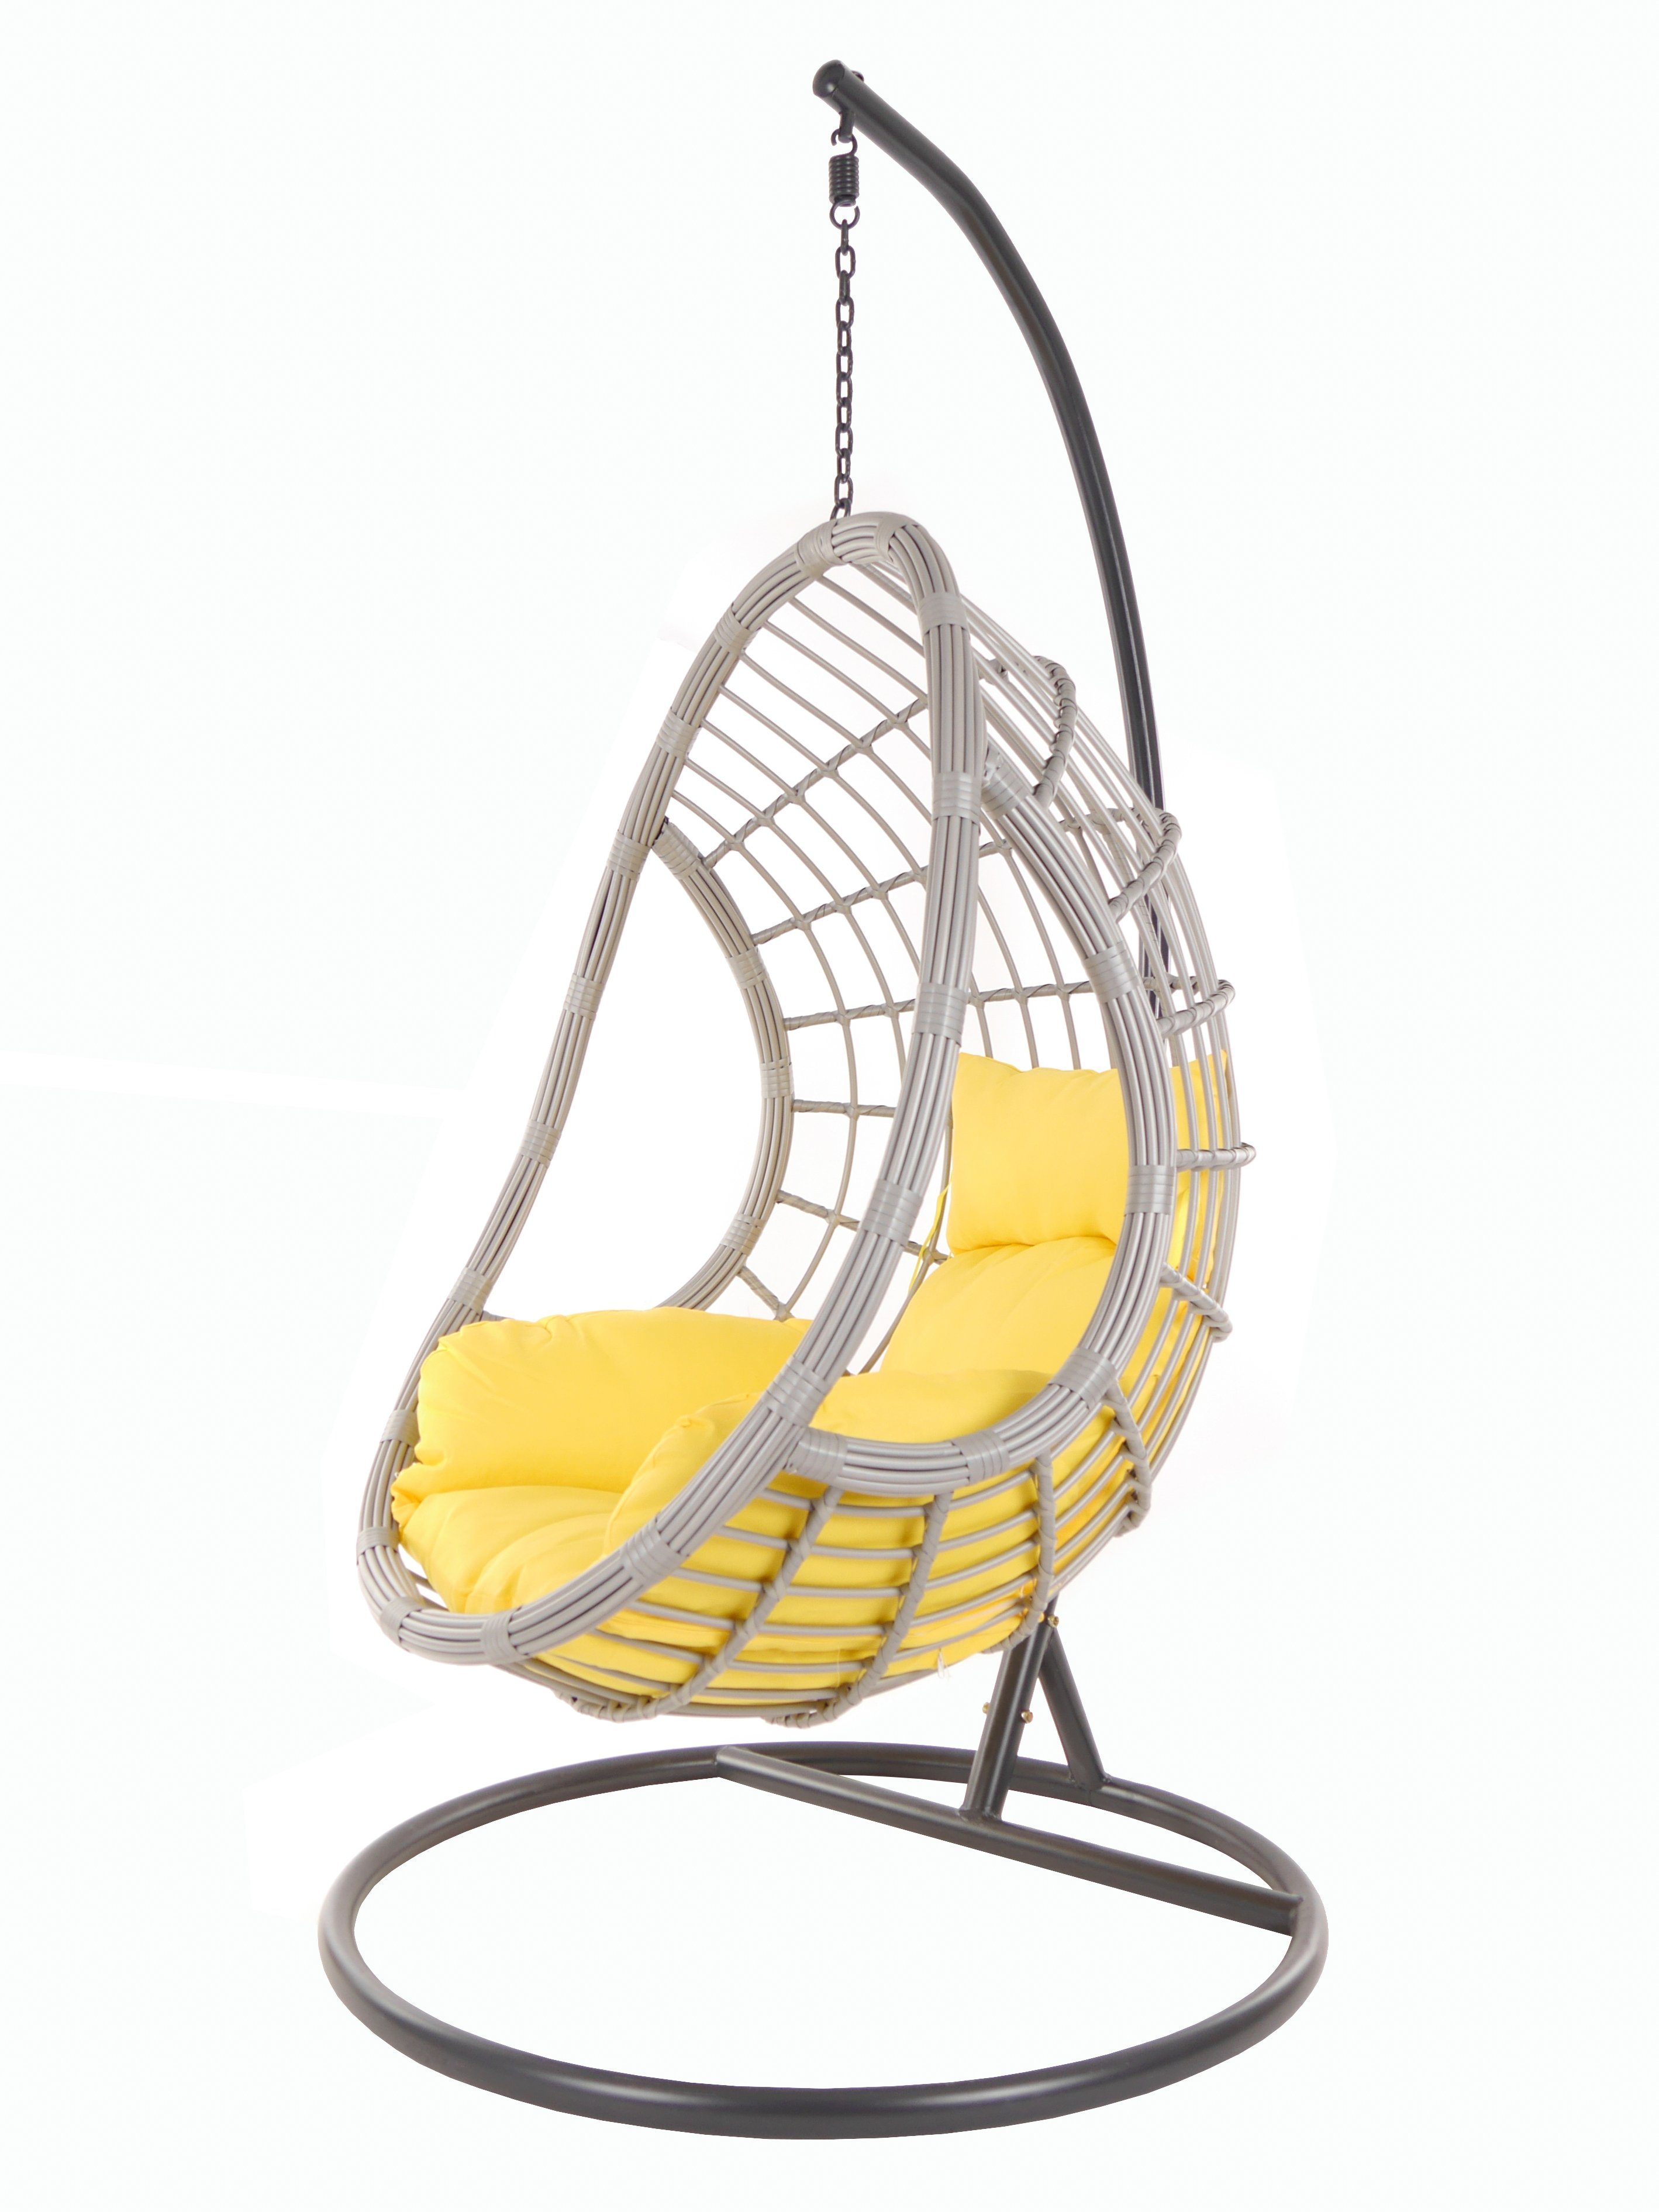 KIDEO Hängesessel PALMANOVA lightgrey, Schwebesessel mit Gestell und Kissen, Swing Chair, Loungemöbel gelb (2200 pineapple)